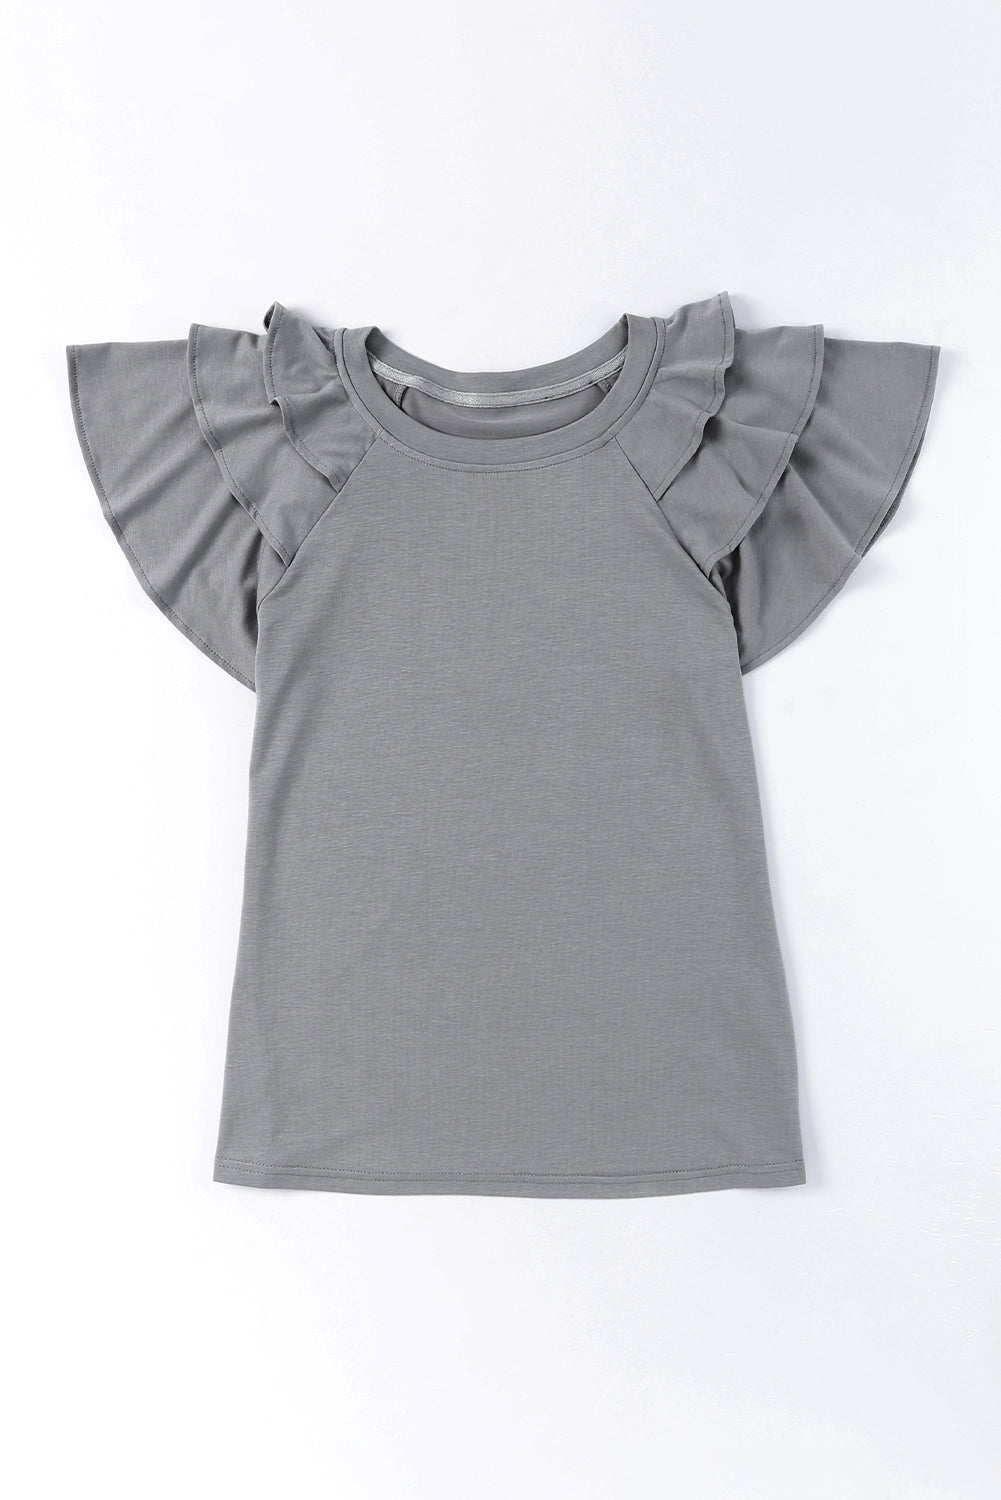 Graues, einfarbiges, kurzärmliges T-Shirt mit Rüschen